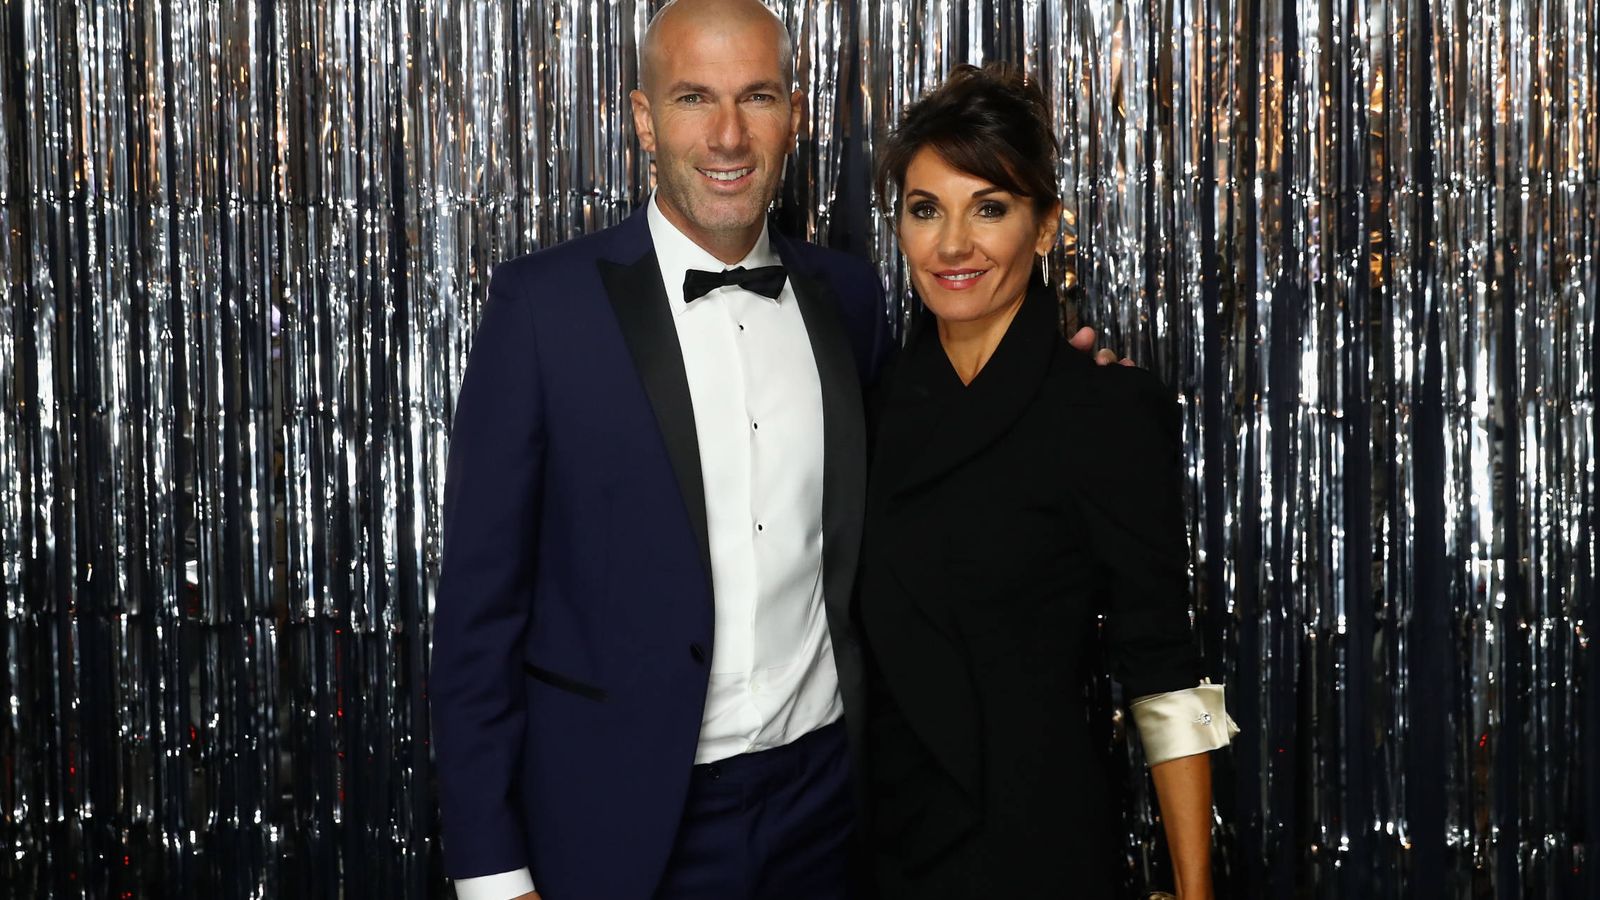 Foto: Zinedine Zidane y su mujer, Veronique Fernández, en unos premios de la FIFA. (Getty)